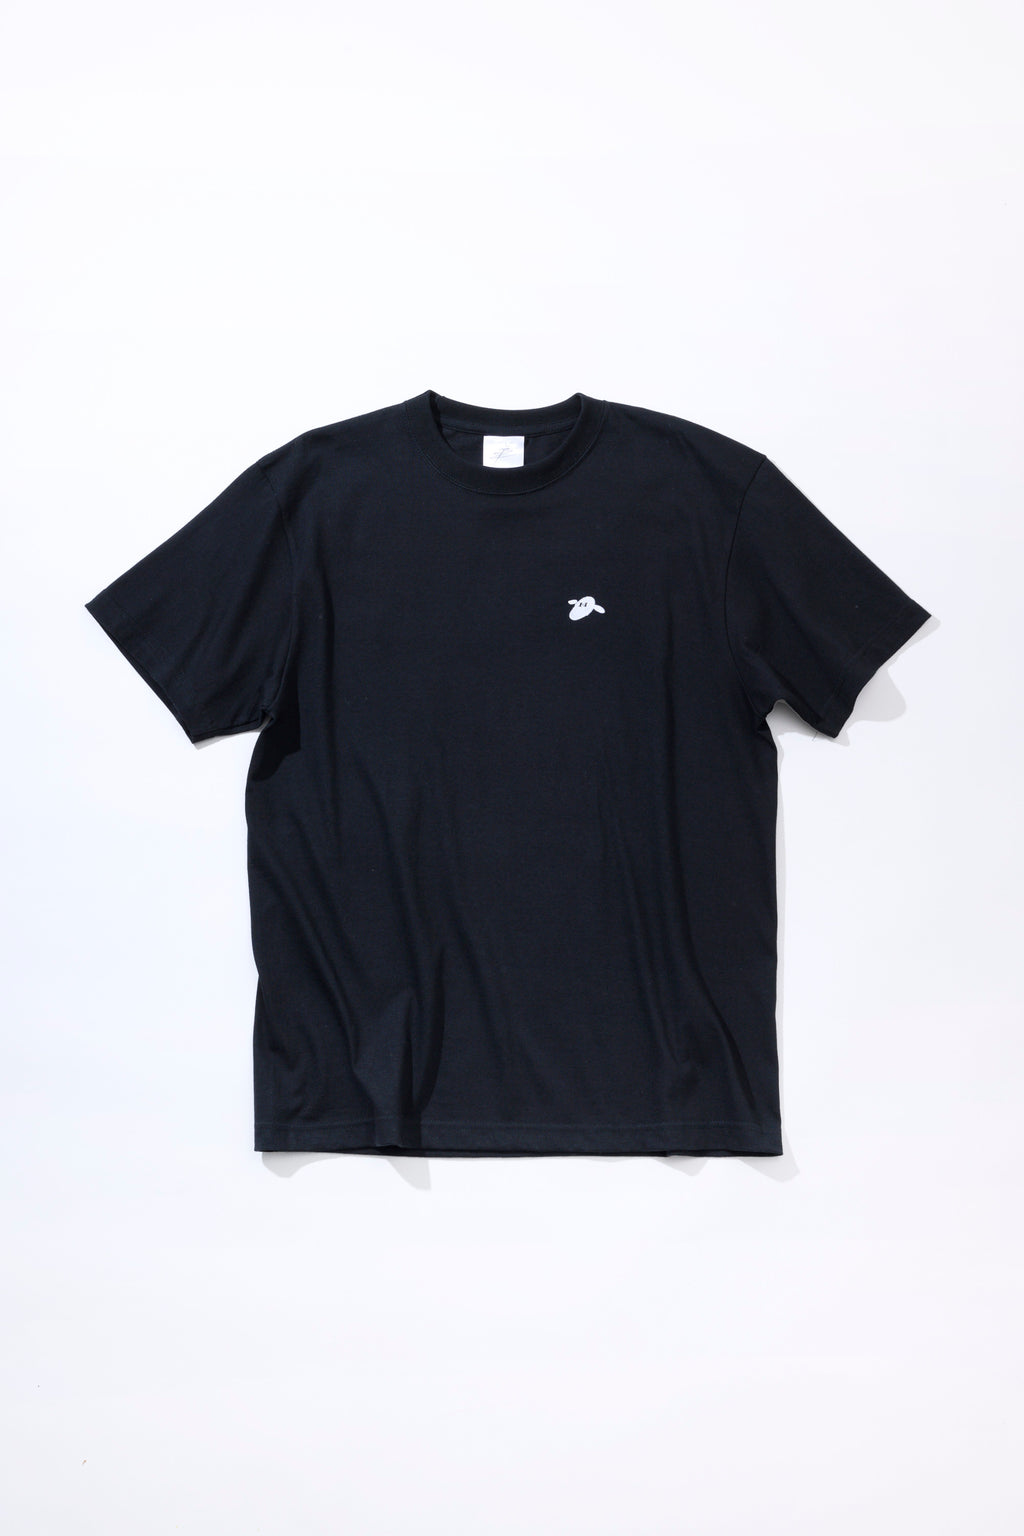 羊文学 exロゴTシャツ [BLACK] – 羊文学 Official Store